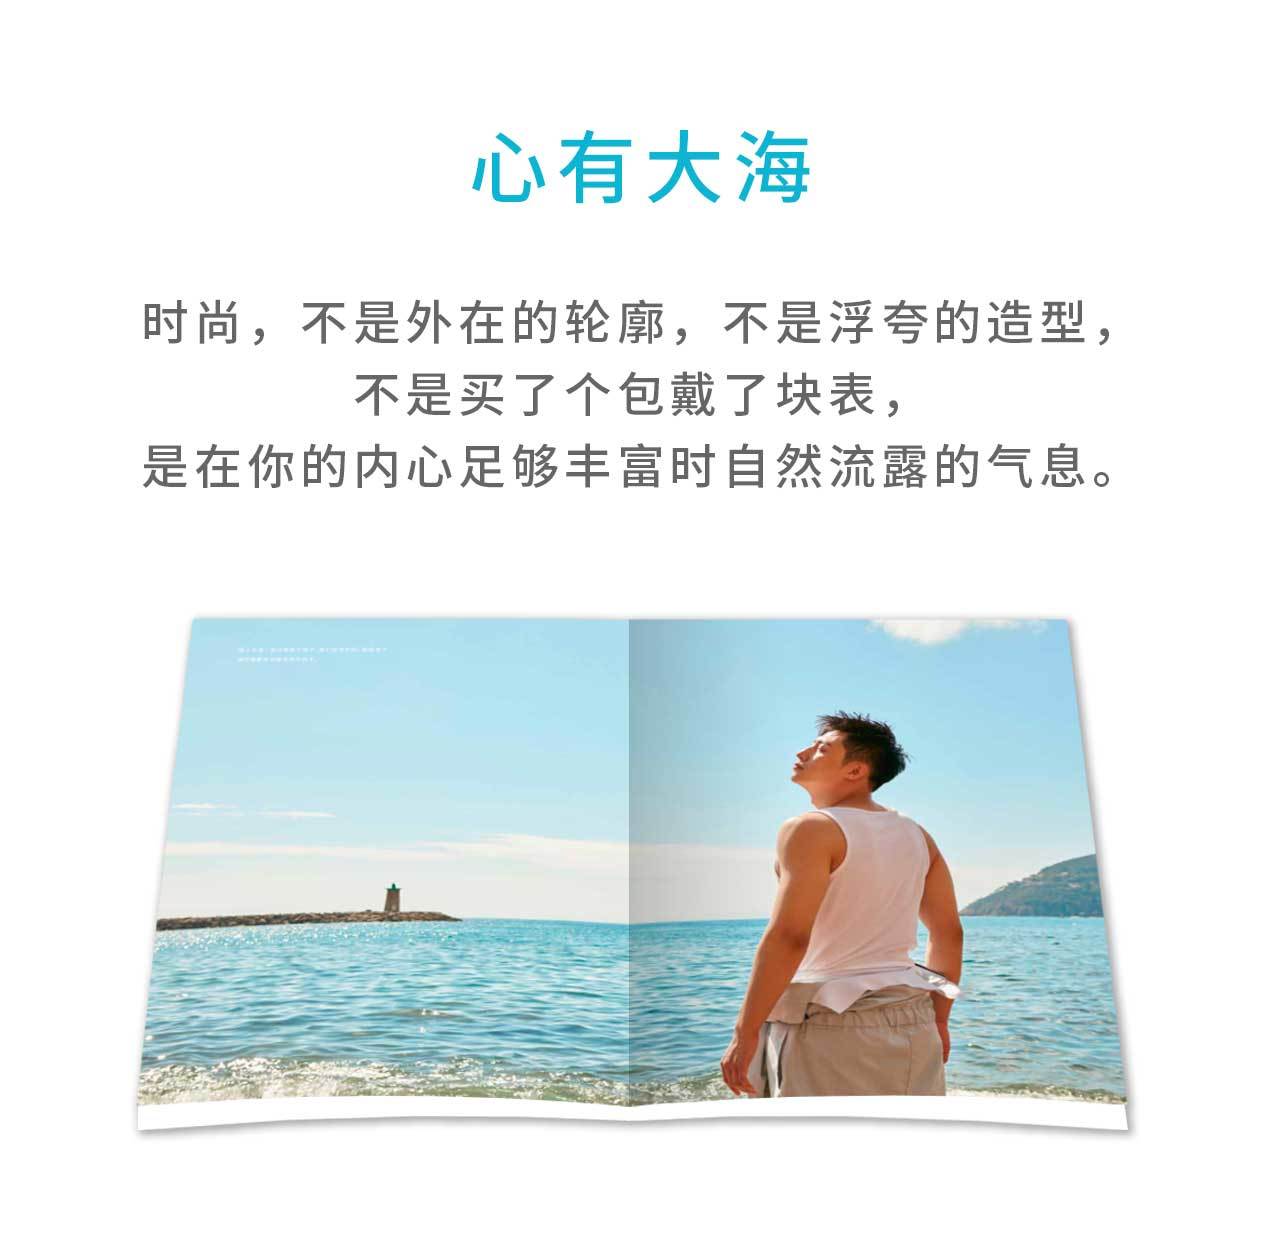 平装 黄景瑜首部写真集 泽海鲸鱼 简体中文版超值礼包 记事本 扇子 海报等多件赠品